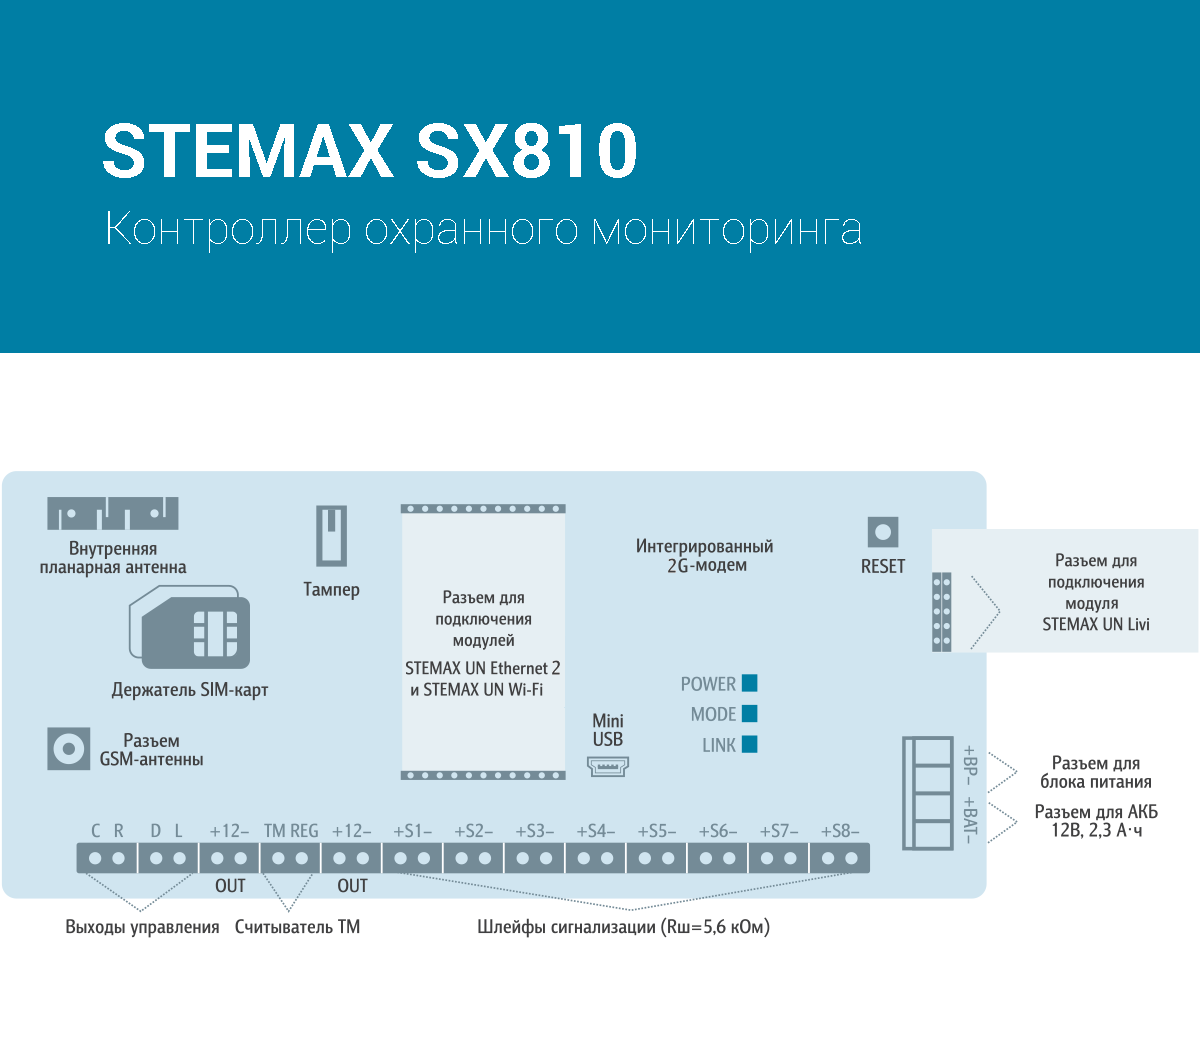 Схема составных частей контроллера STEMAX SX810